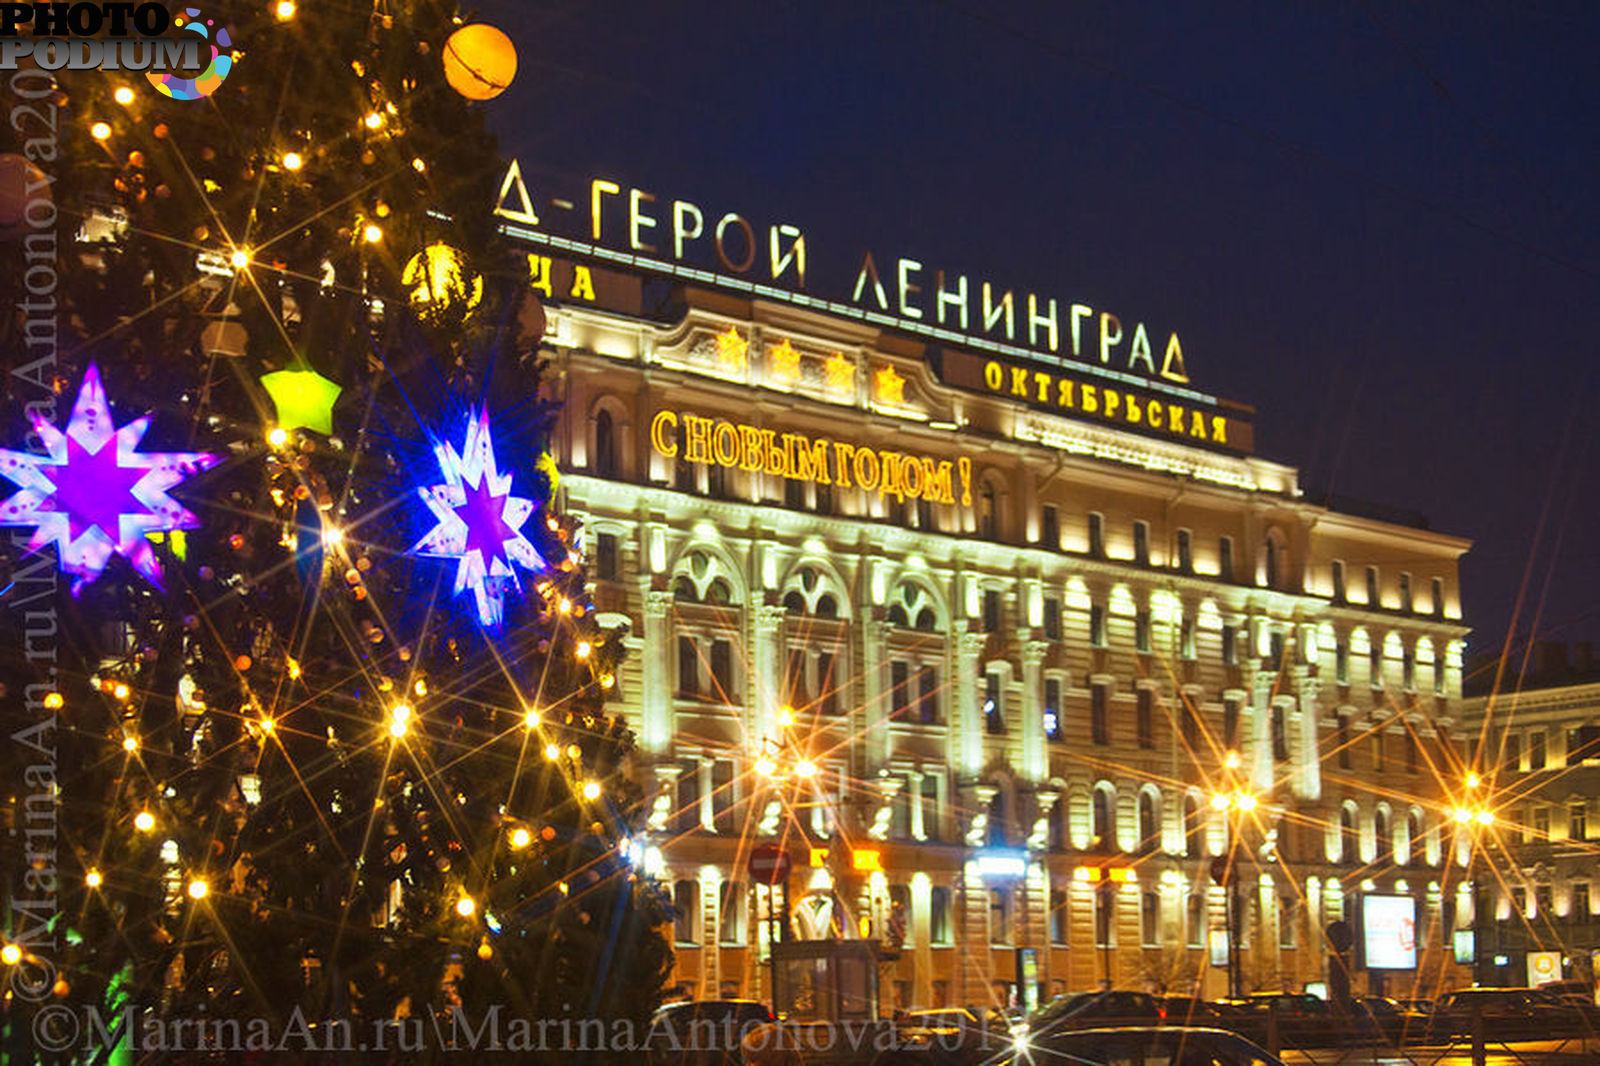 Гостиница Октябрьская Санкт-Петербург на Невском проспекте зимой